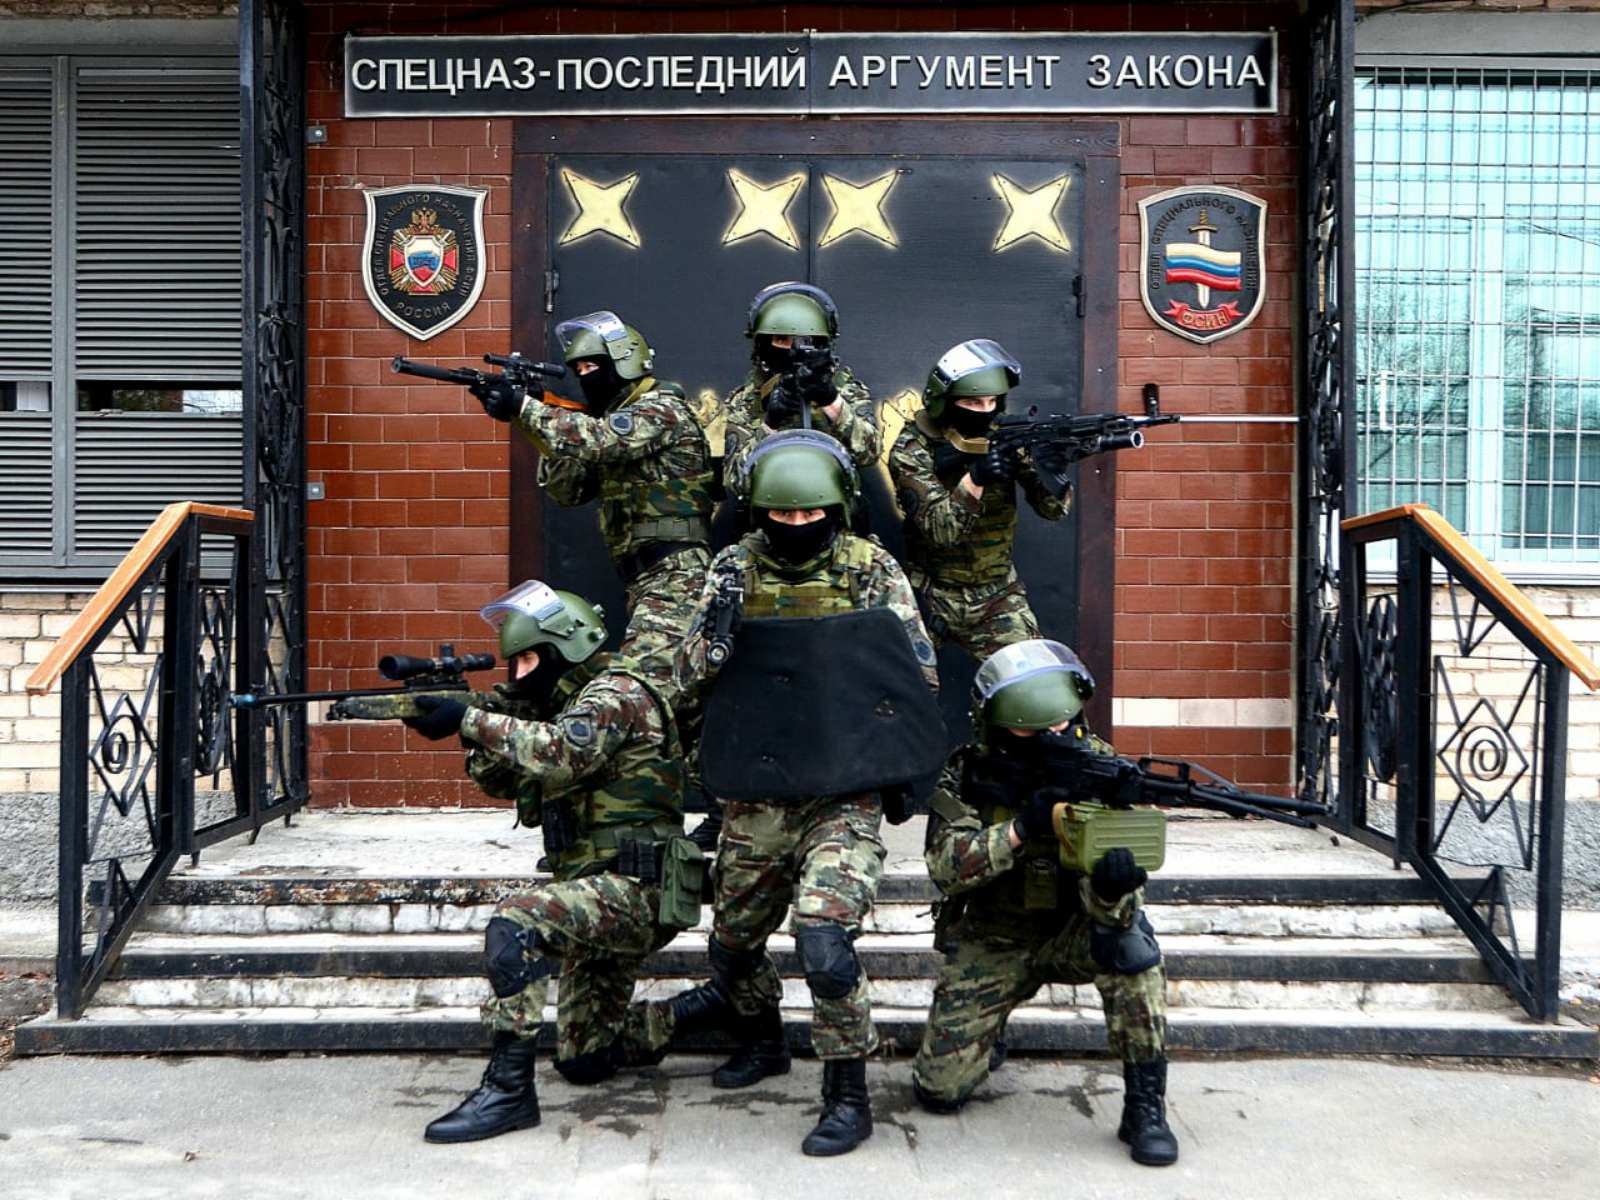 Бойцы спецназа ФСИН отмечают профессиональный праздник